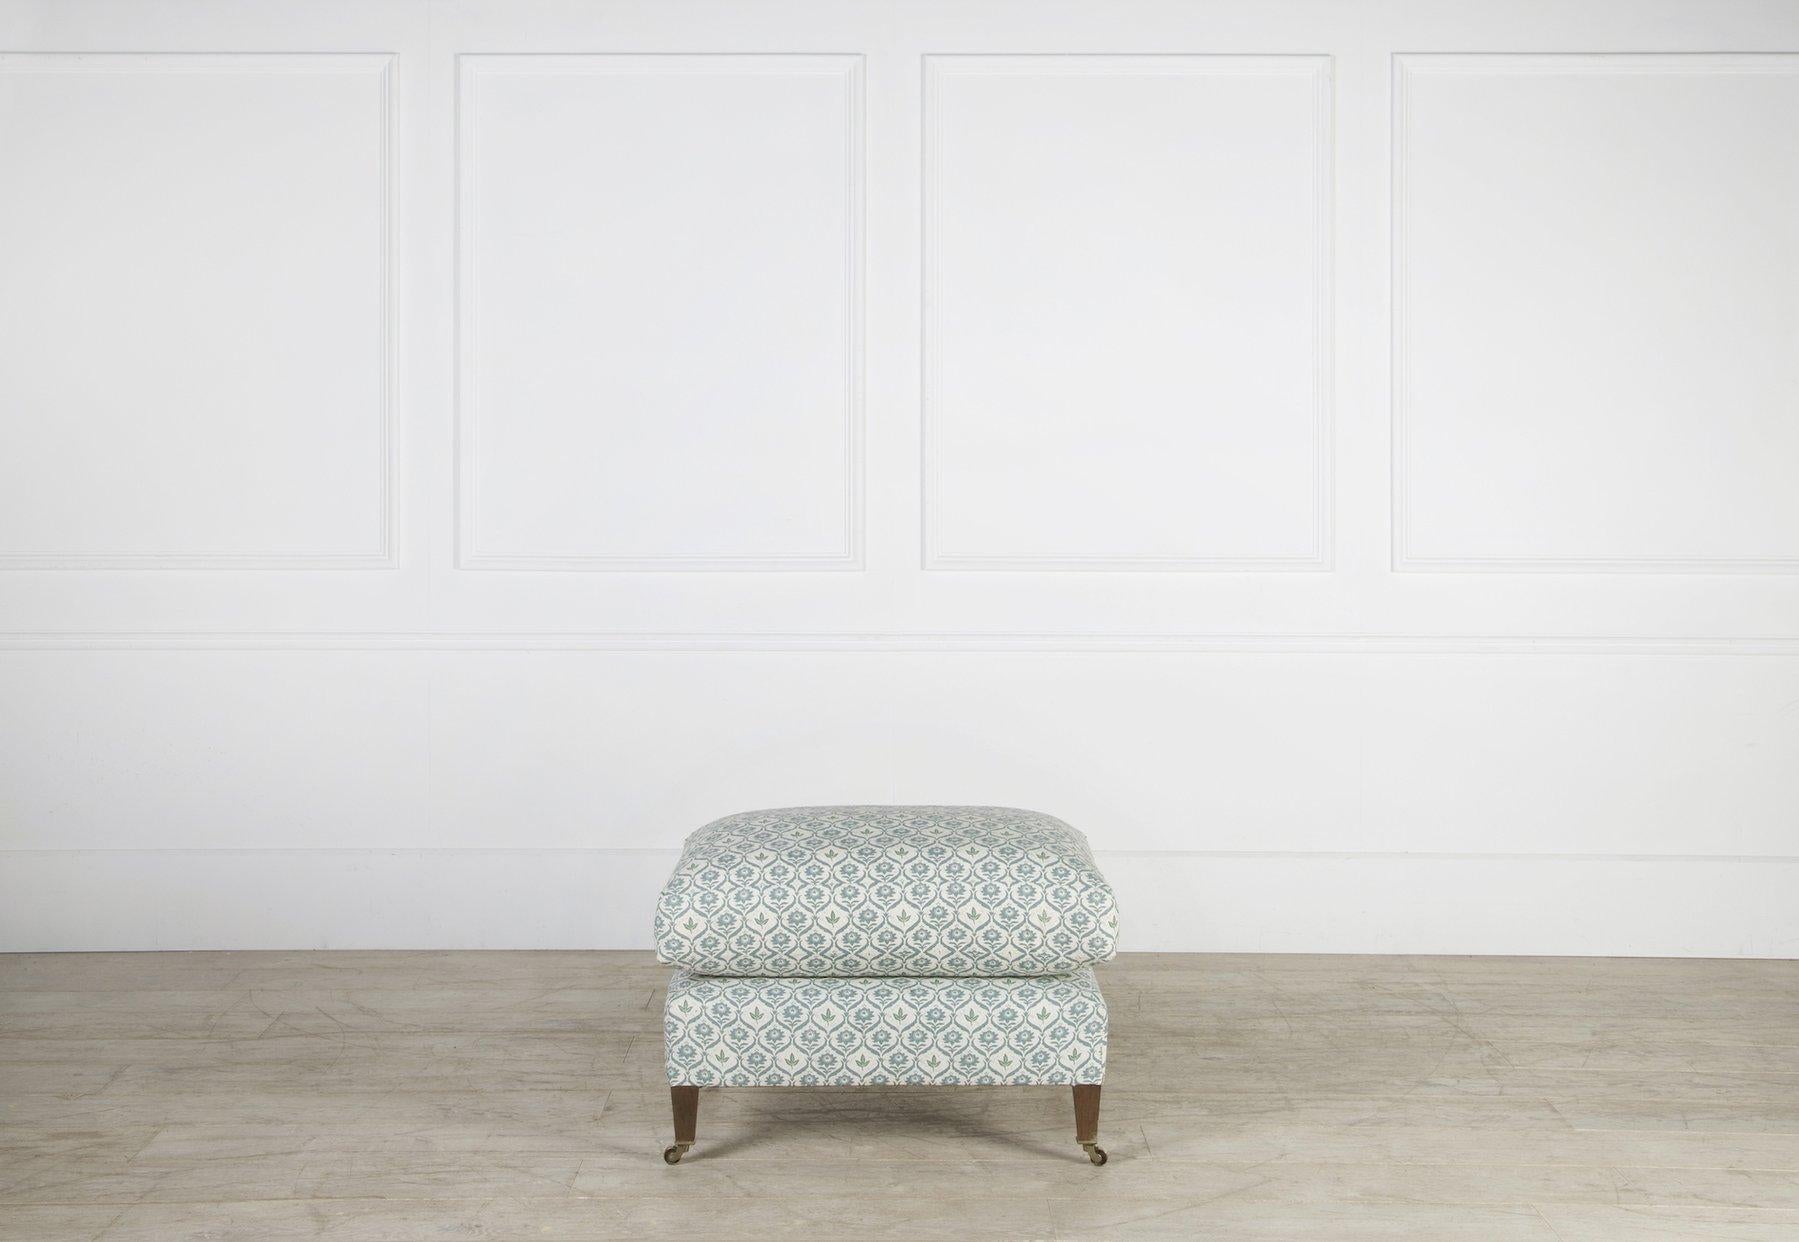 Fabriqué sur commande à partir de notre collection de tapisserie sur mesure, le pouf Hampton offre un grand confort dans ses petites proportions.  Inspiré d'un modèle Howard and Sons du XIXe siècle, le tabouret est surmonté d'un coussin de 4 pouces